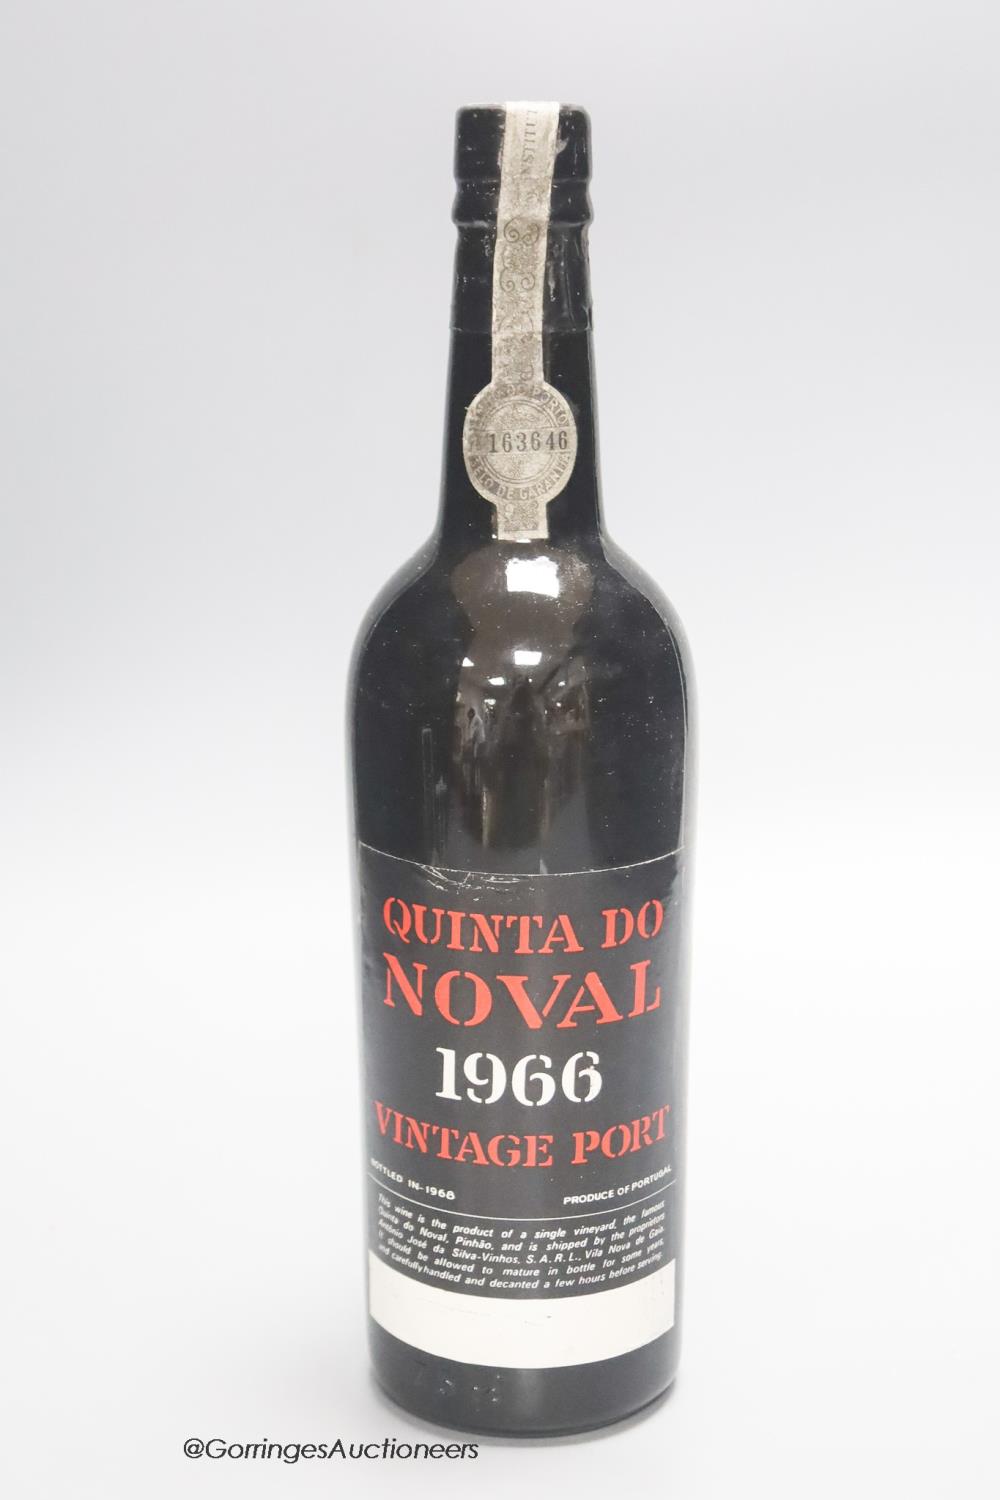 A bottle of 1966 Quinta Do Noval Vintage port